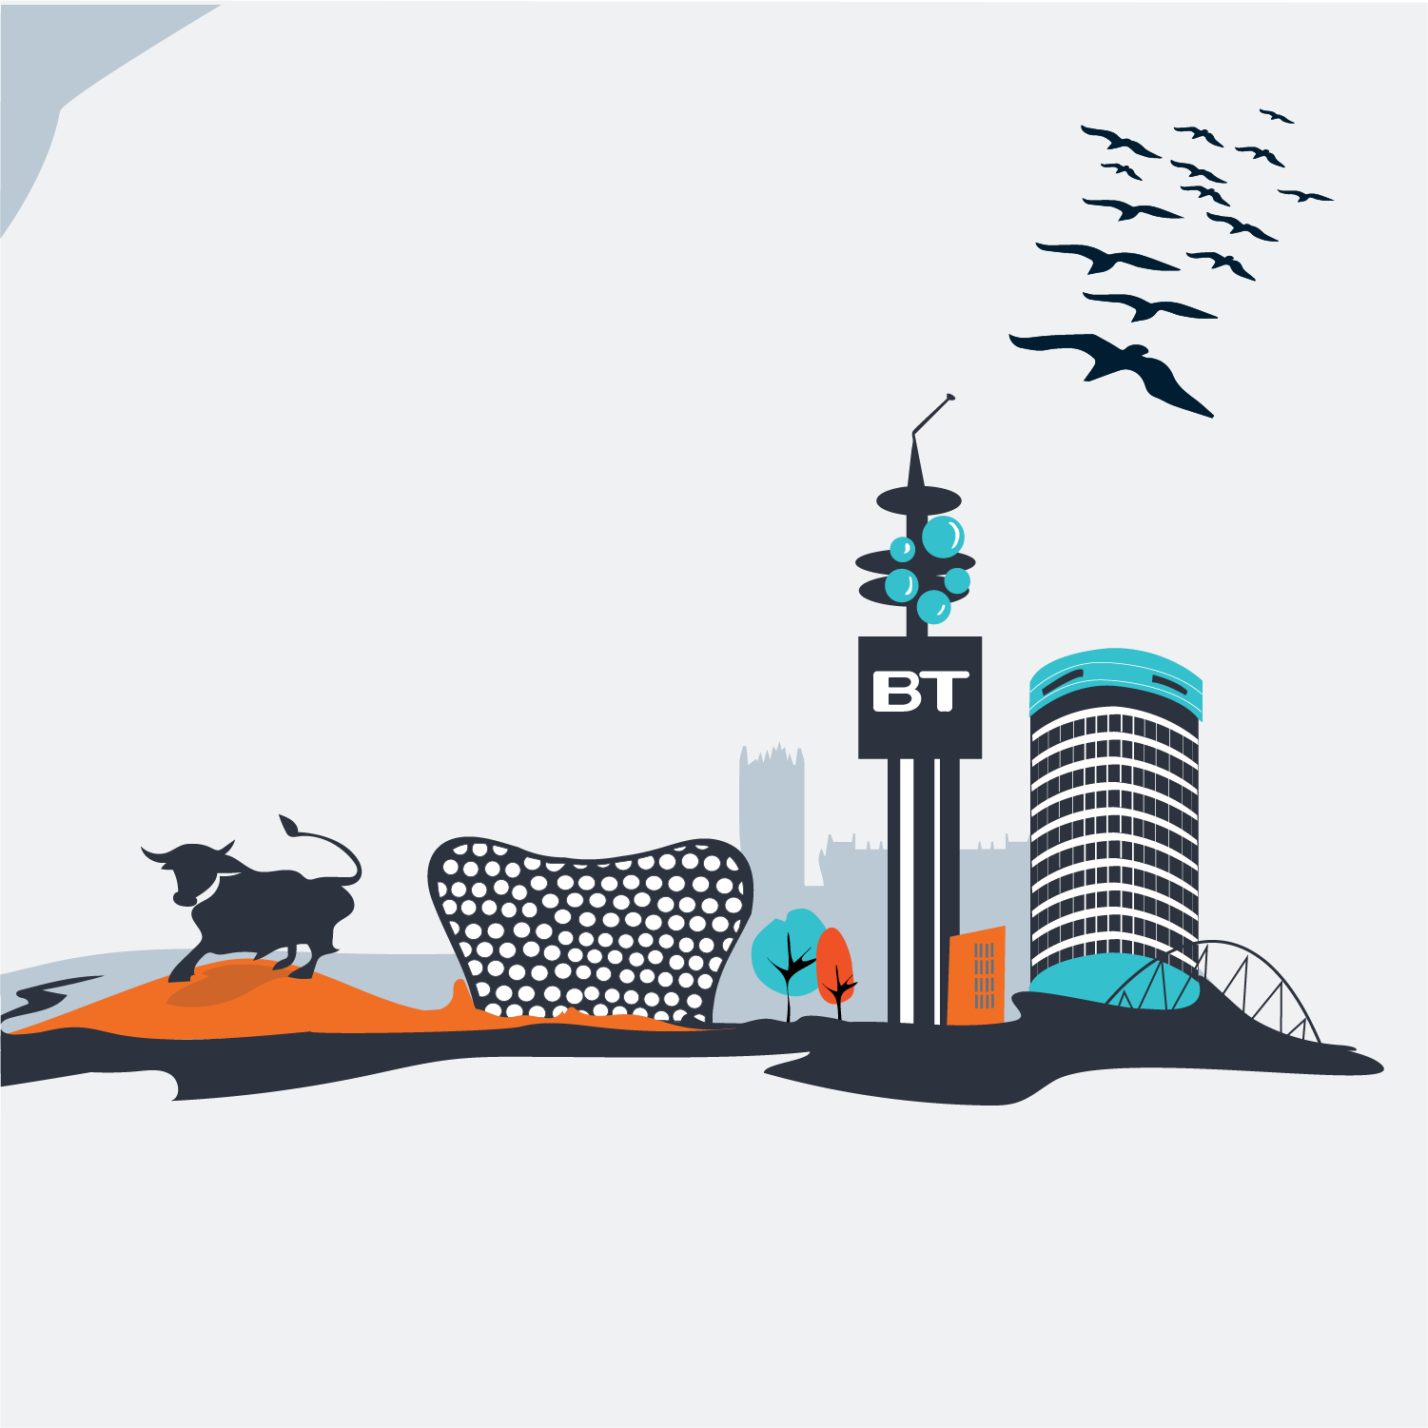 BT Tower illustration